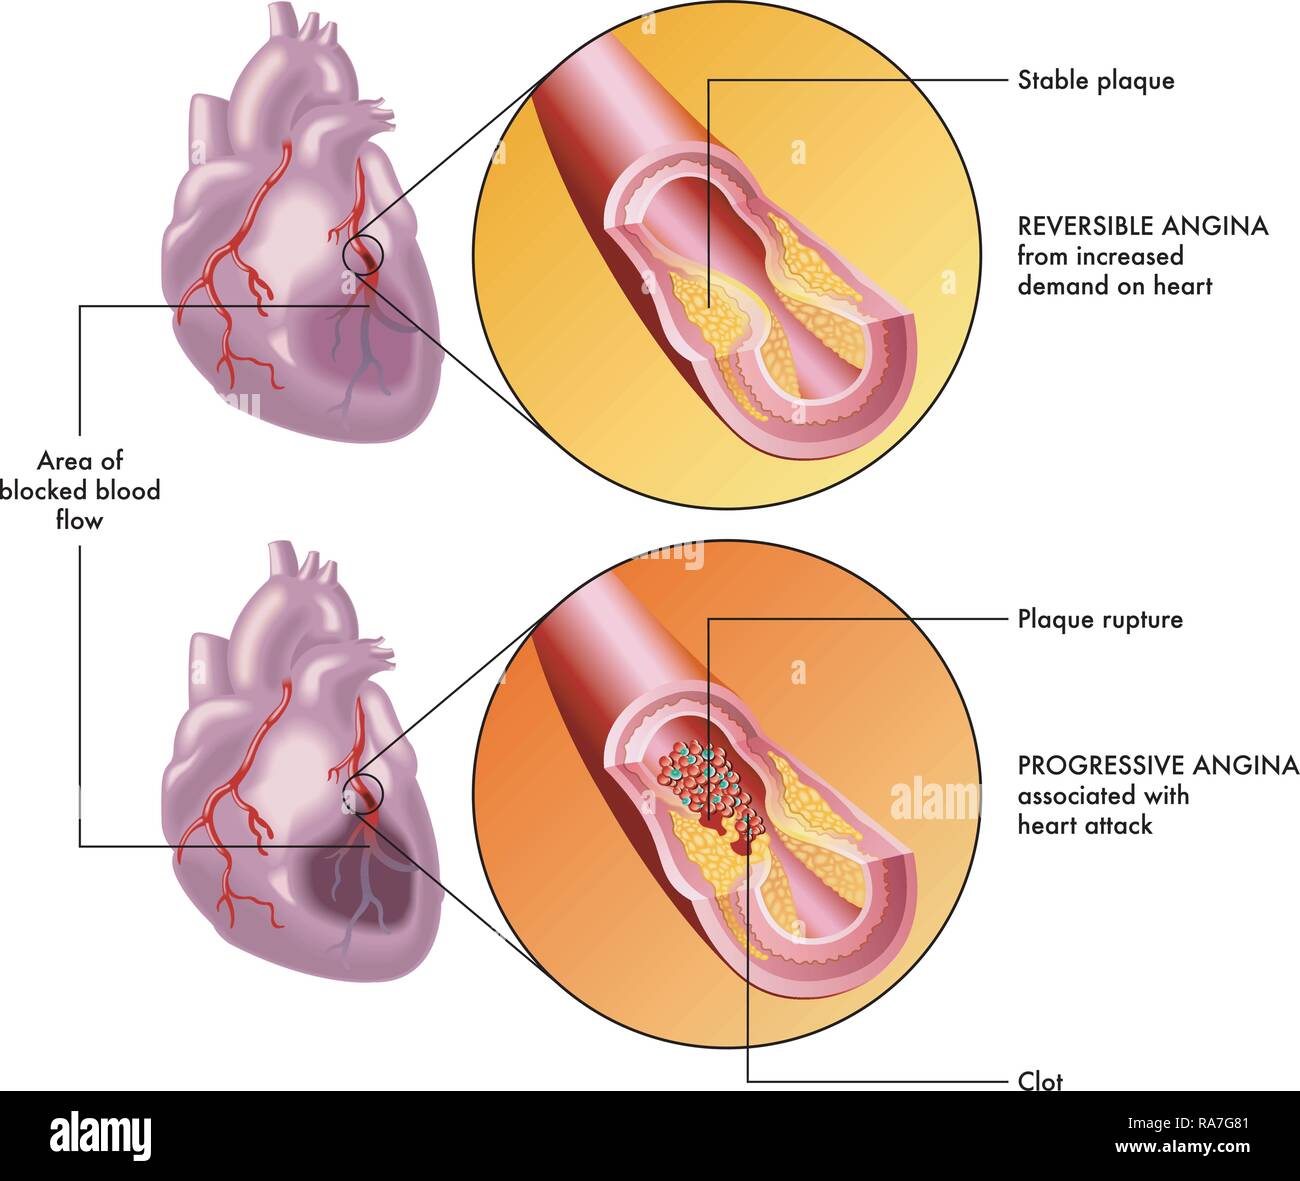 Una illustrazione medica del cuore umano e gli effetti di una reversibile e una progressiva di angina. Illustrazione Vettoriale